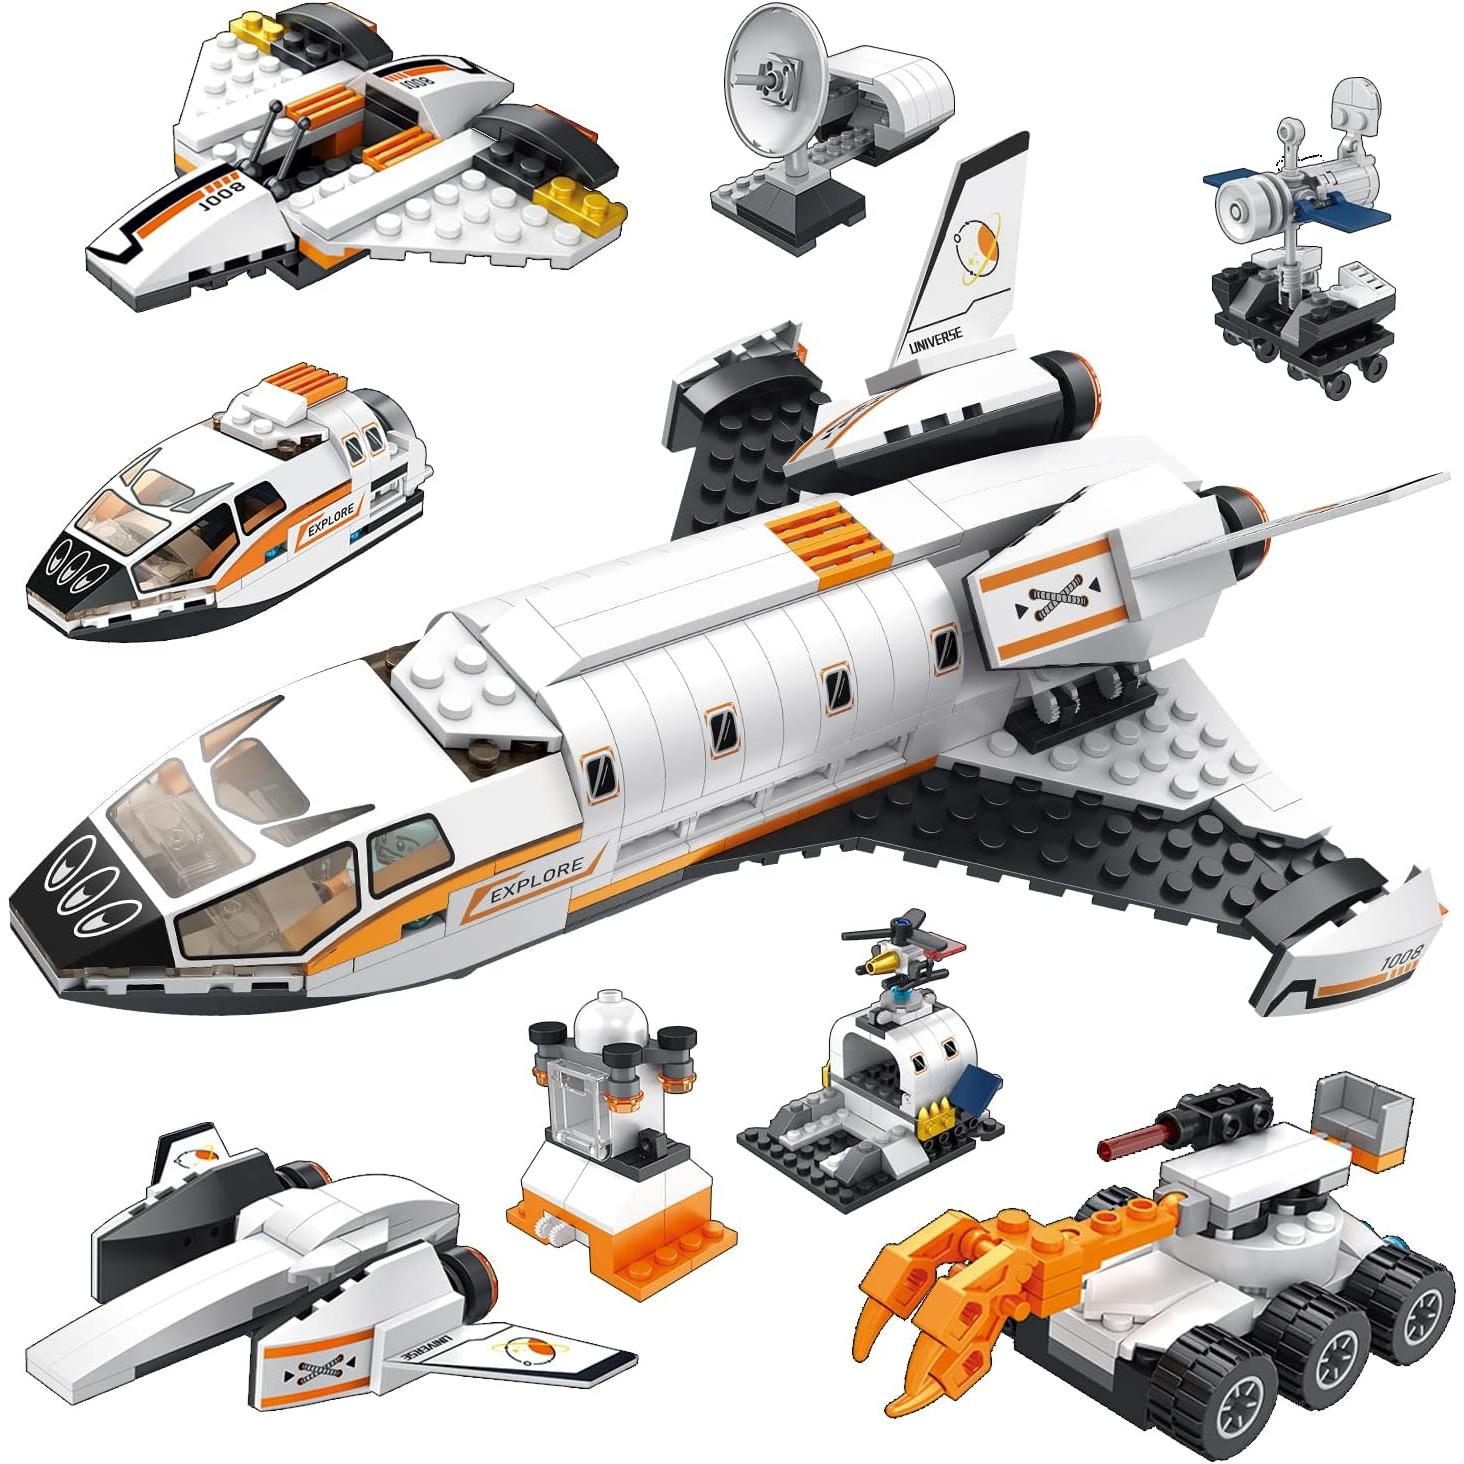 ZeMo - ZEMO- Kit de construcción de juguetes de 416 piezas de investigación de Marte – 8 en 1 juego de juguetes de exploración espacial con vehículos de Marte, satélites de sonda, radar de sonda y laboratorio de investigación, el mejor regalo para niños